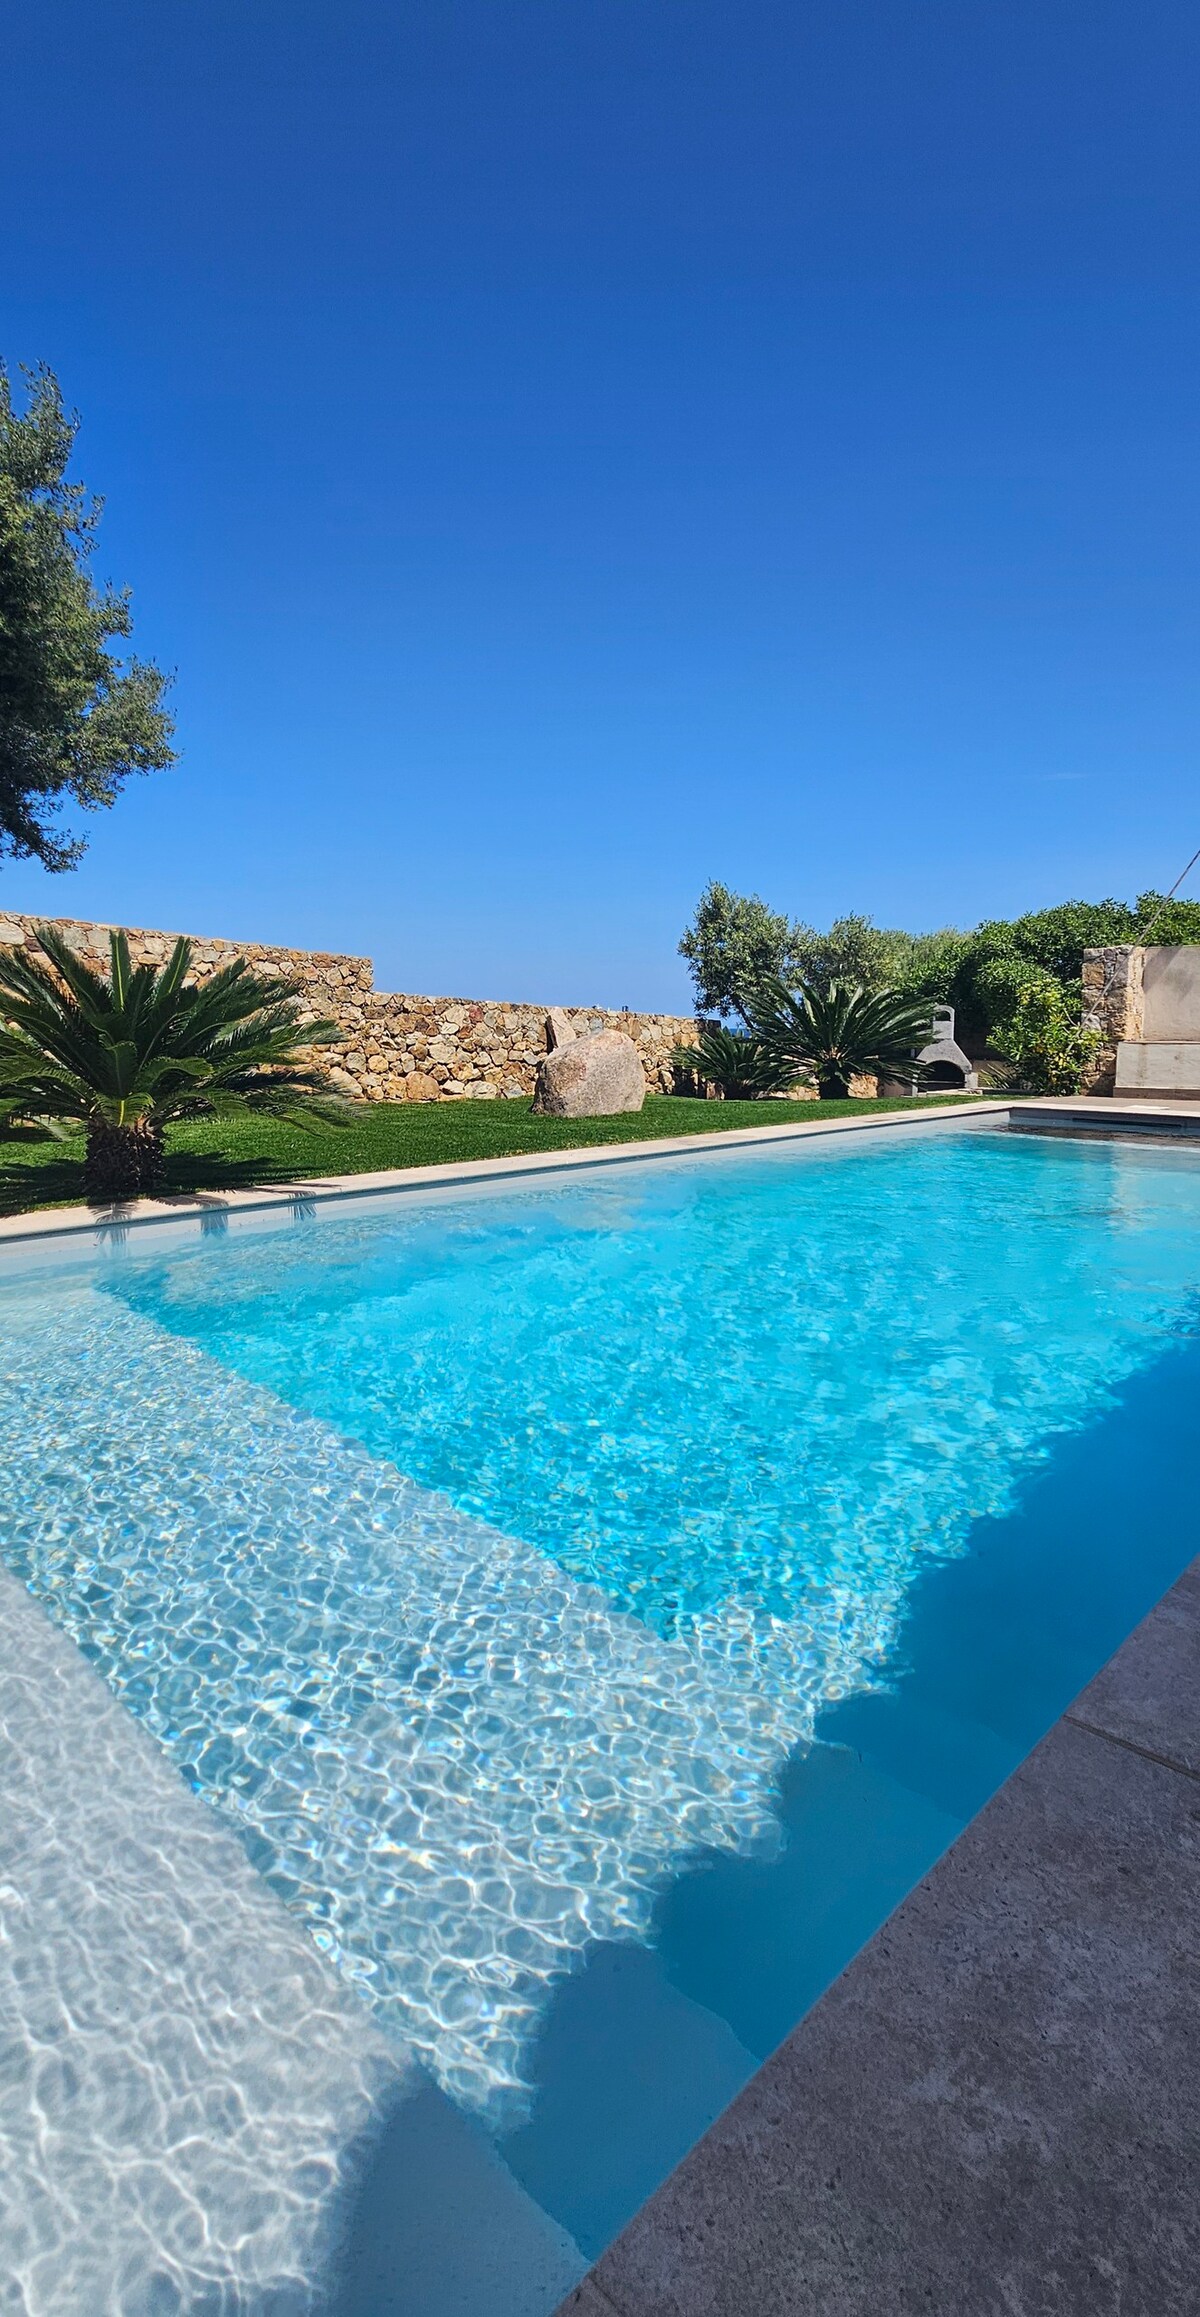 Villa avec piscine - Splendide vue mer - 8 pers.